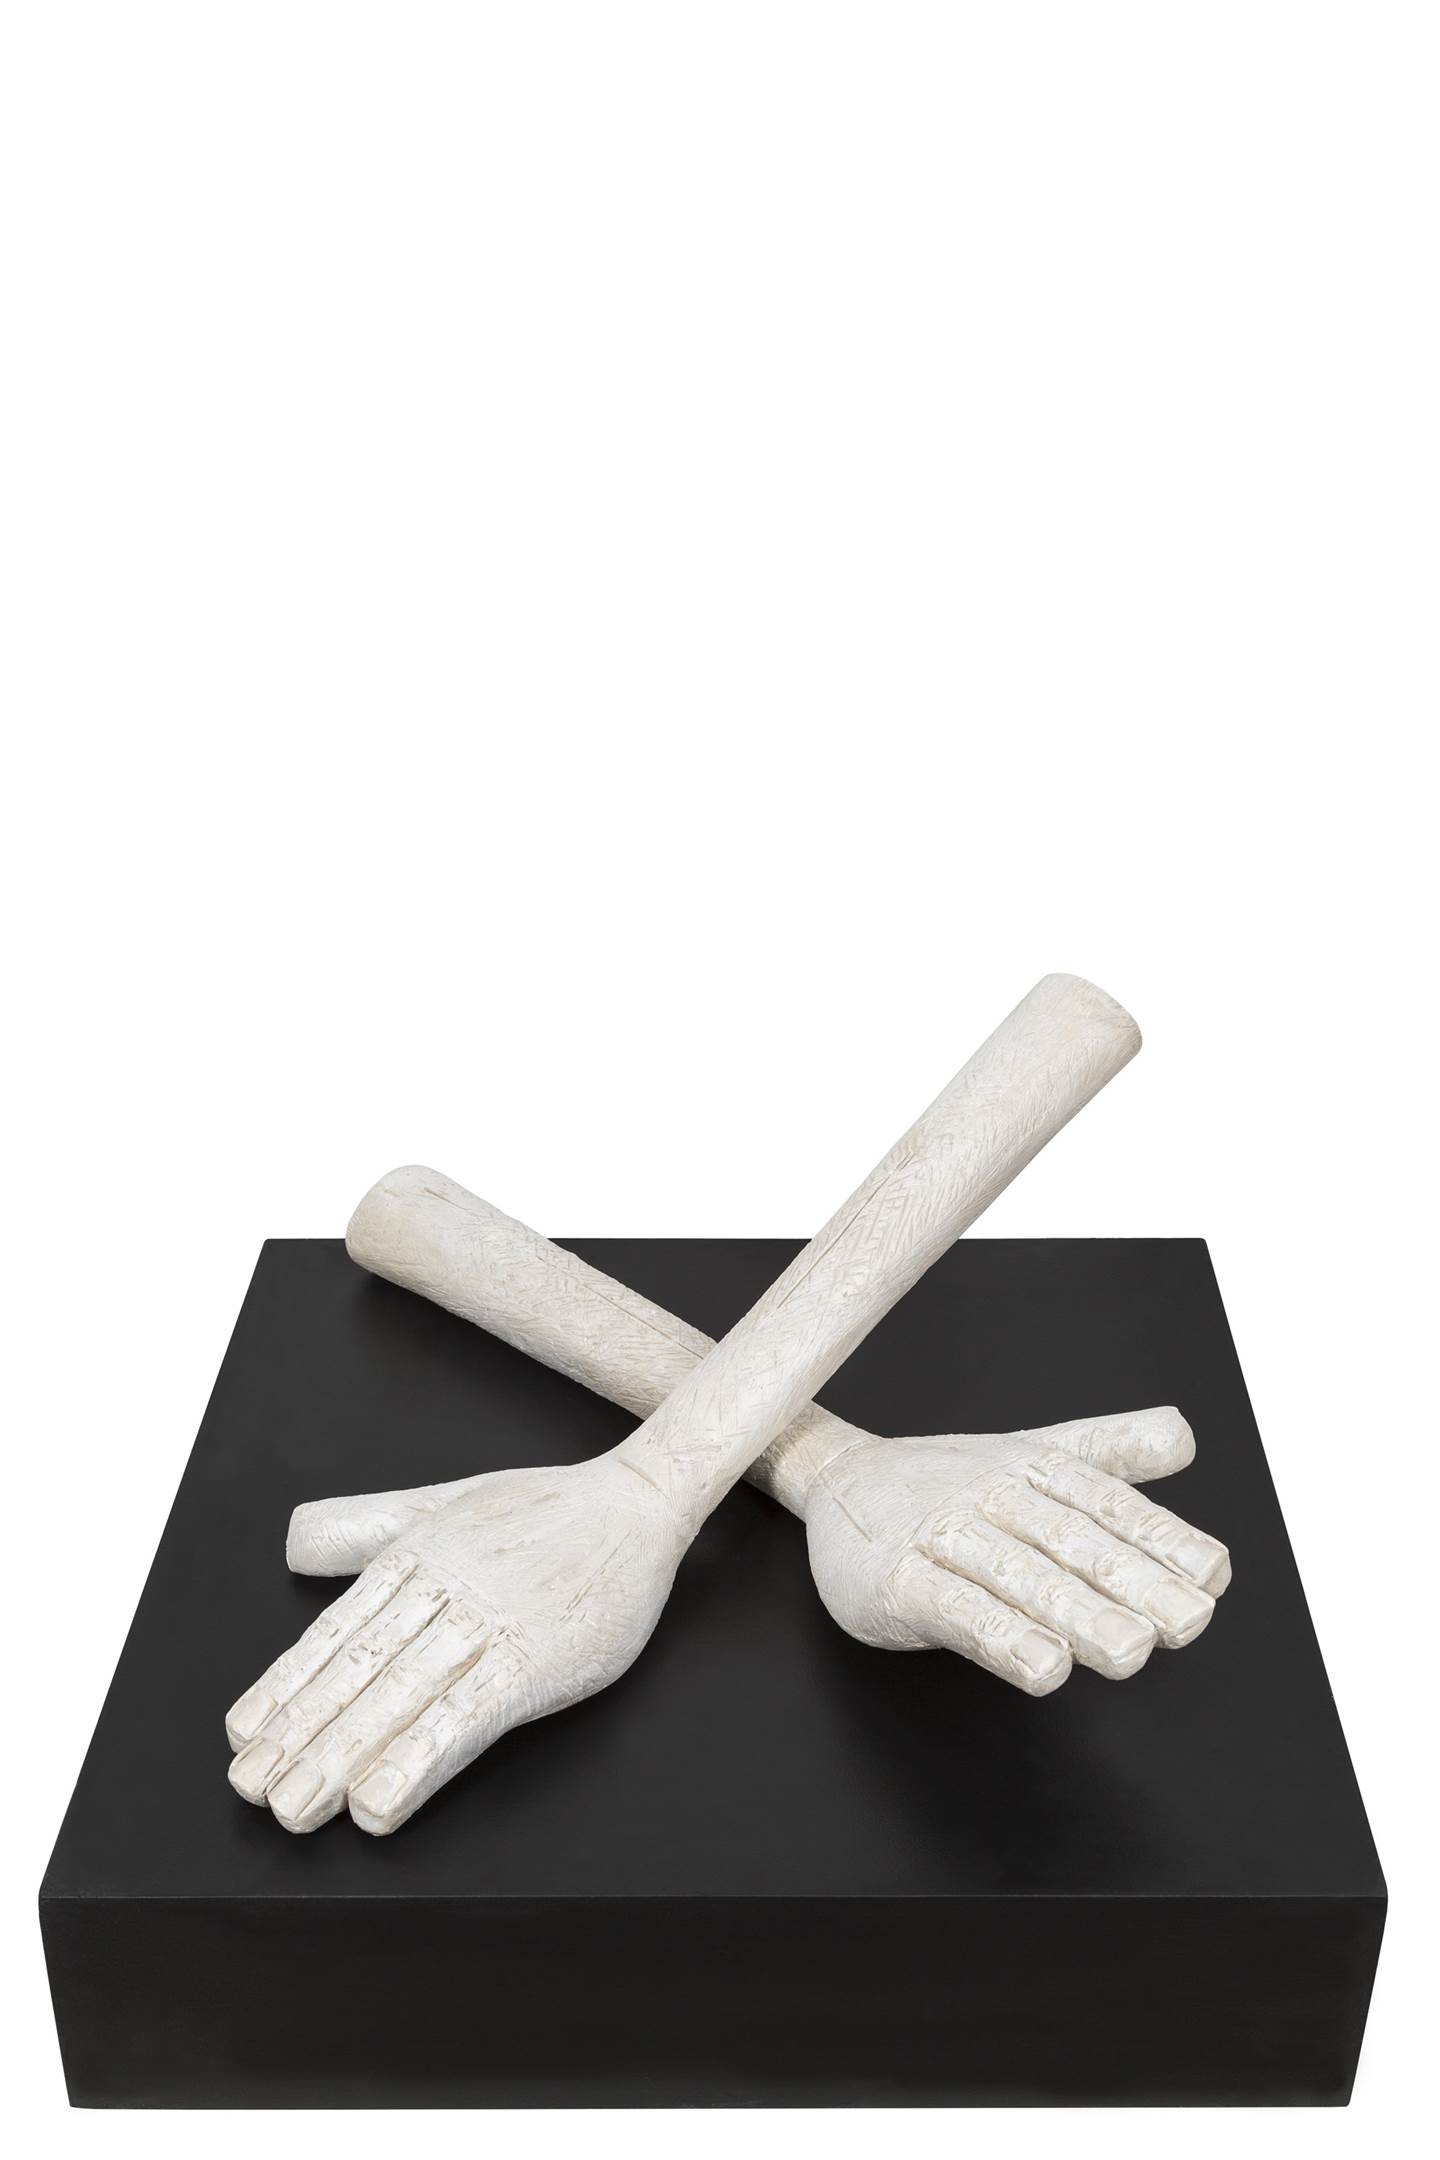 Mãos , Escultura Técnica Mista Figura Humana original por Pedro Figueiredo